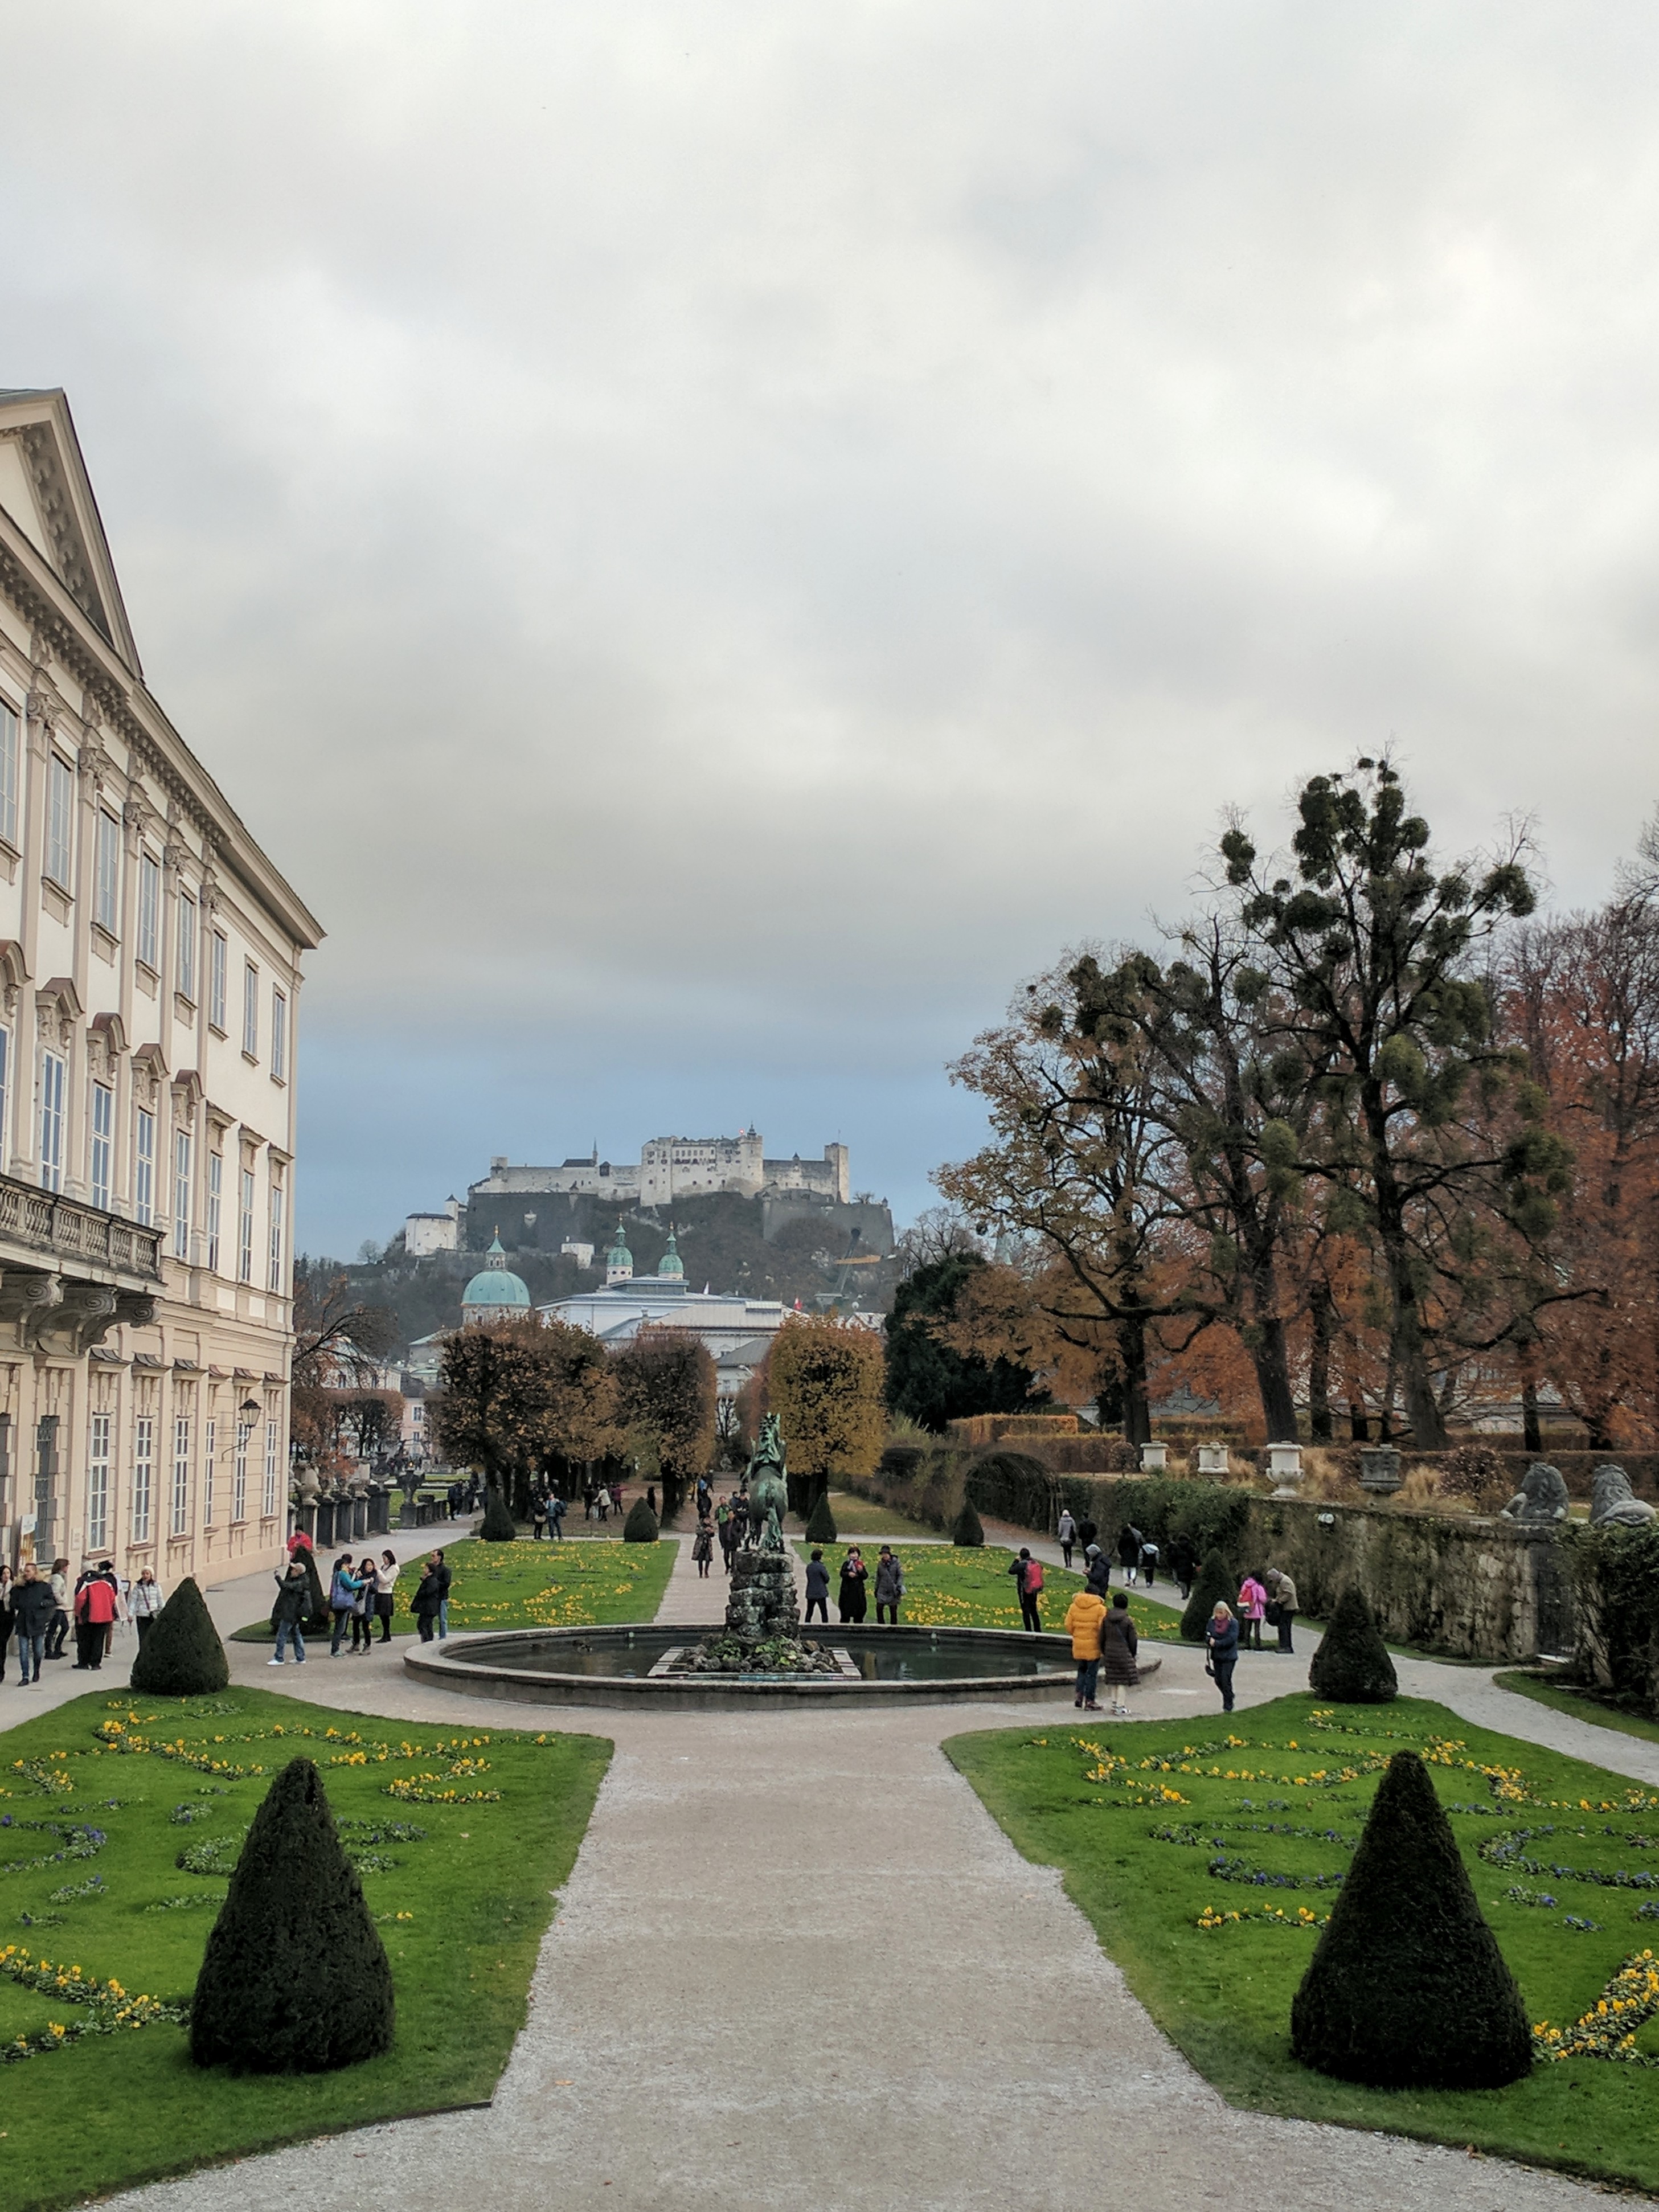 Mirabell Gardens in Salzburg